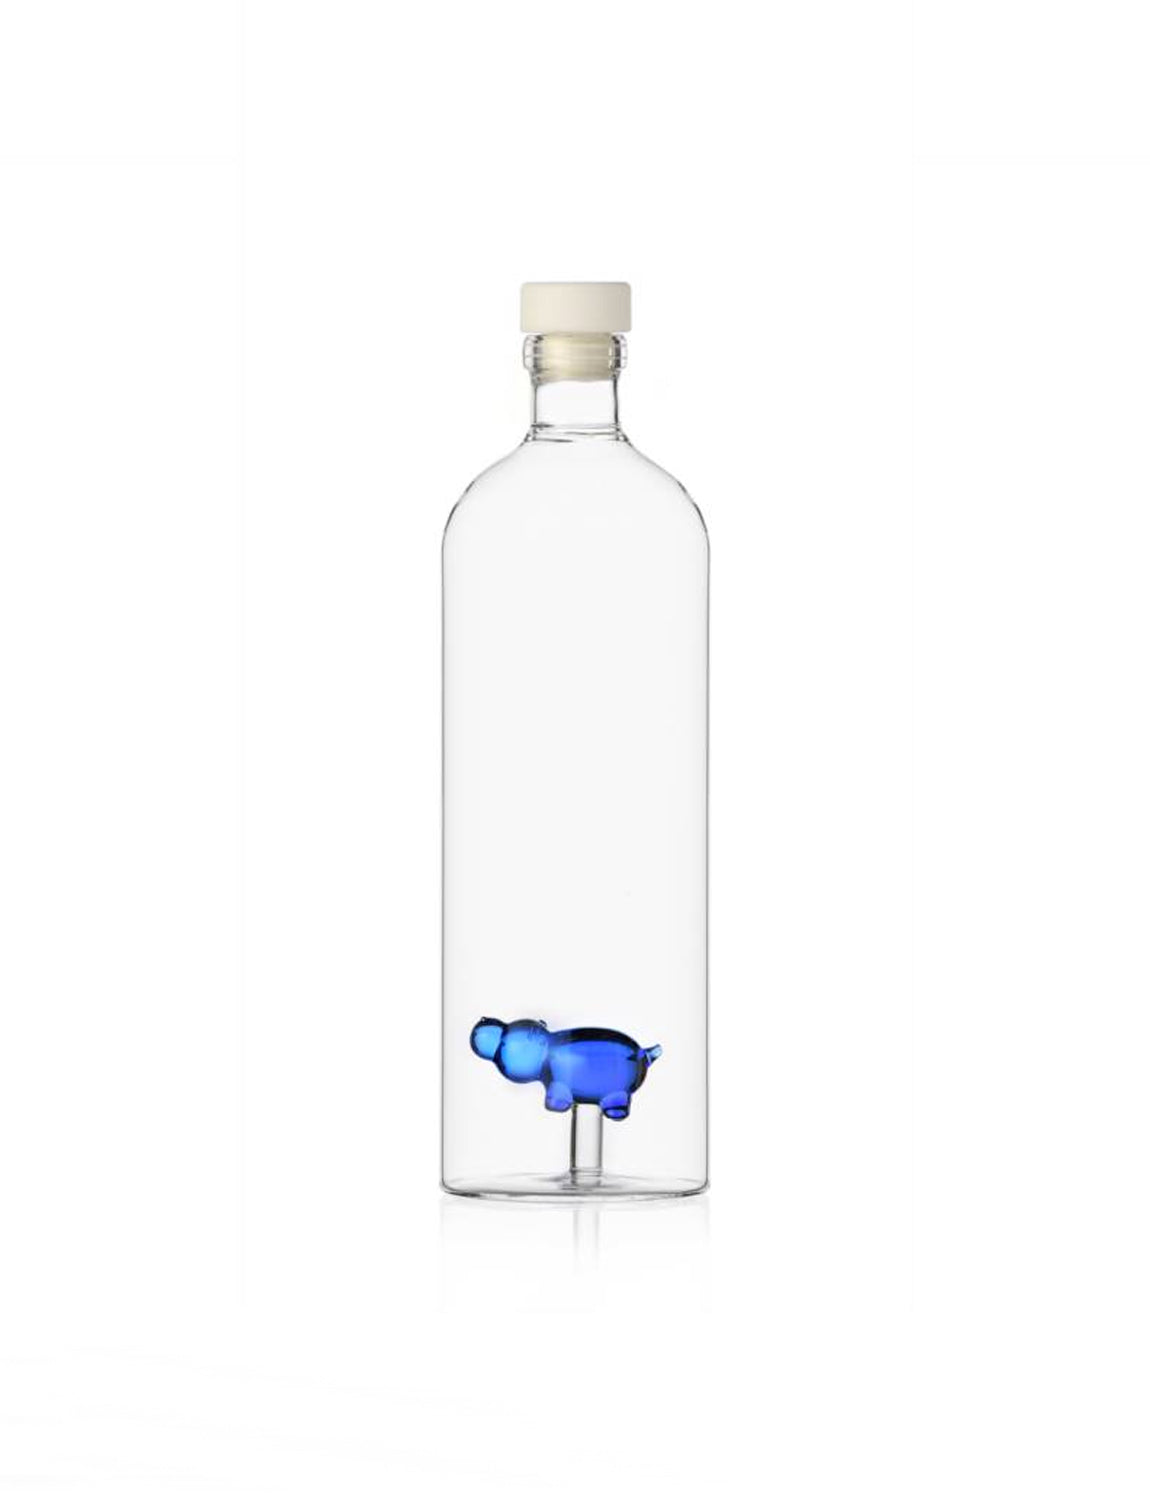 Ichendorf Animal Farm Bottle, blue hippo